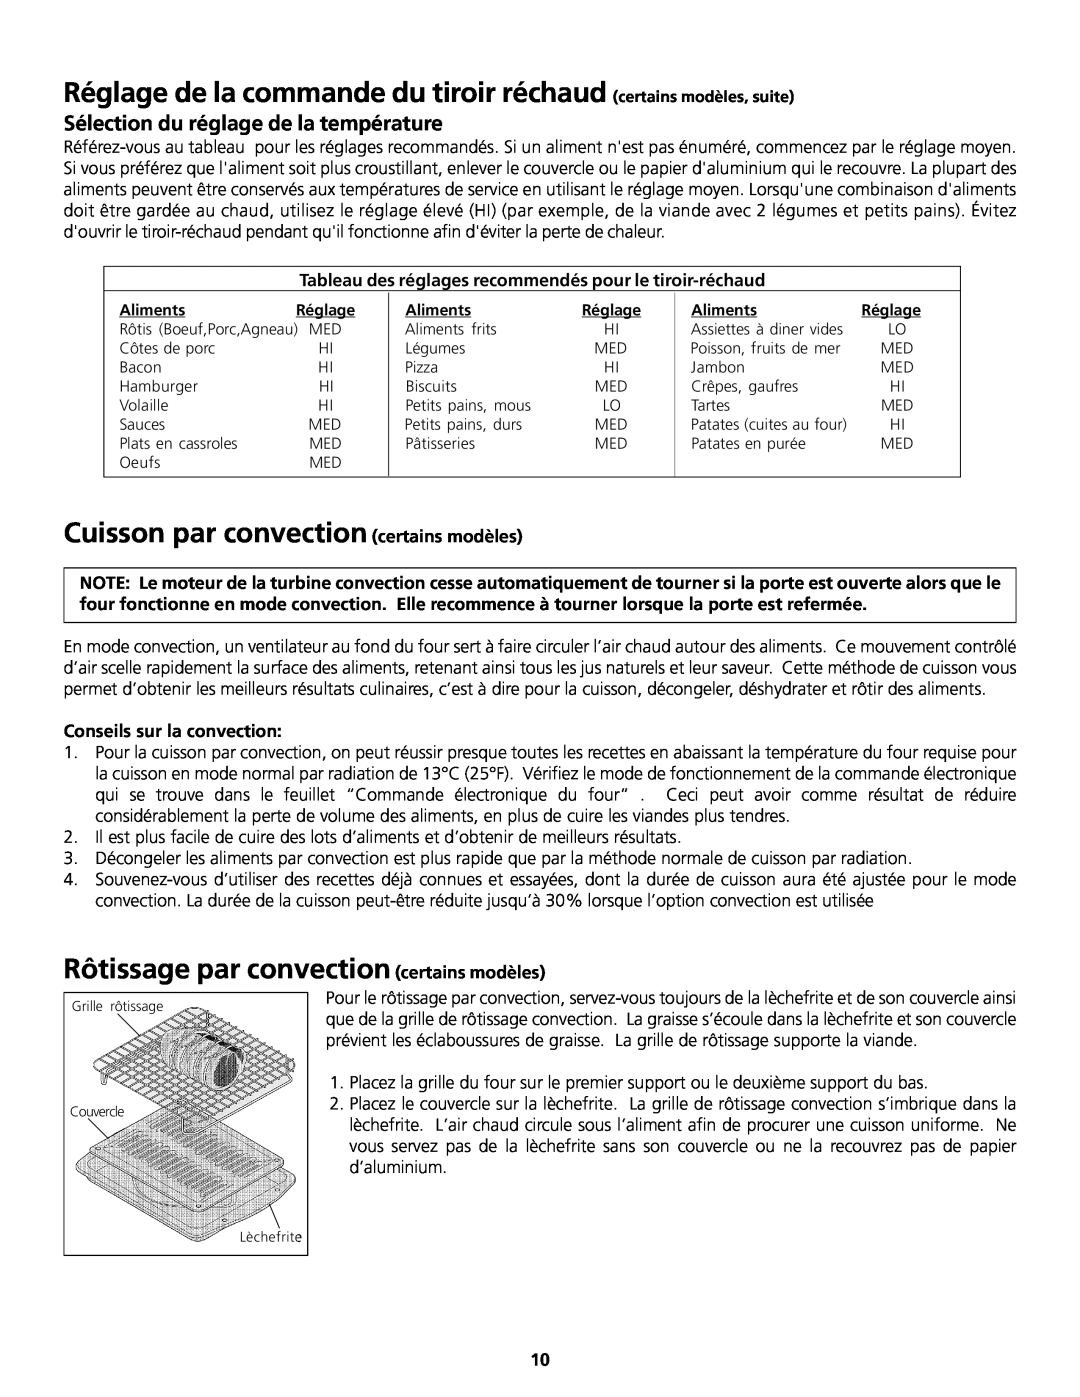 Frigidaire 318200858 Réglage de la commande du tiroir réchaud certains modèles, suite, Conseils sur la convection 